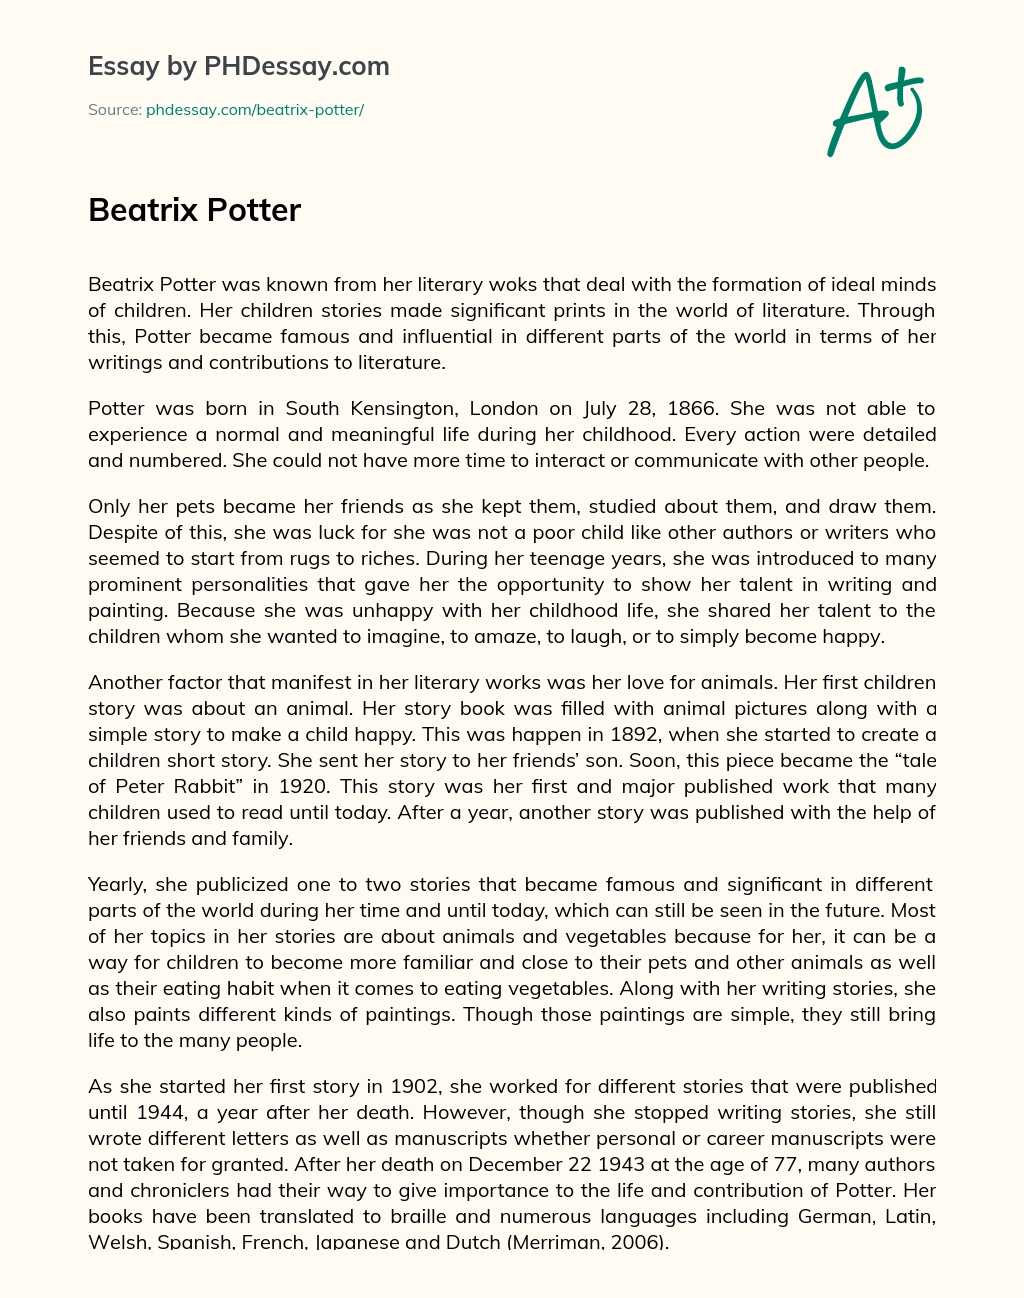 Beatrix Potter essay